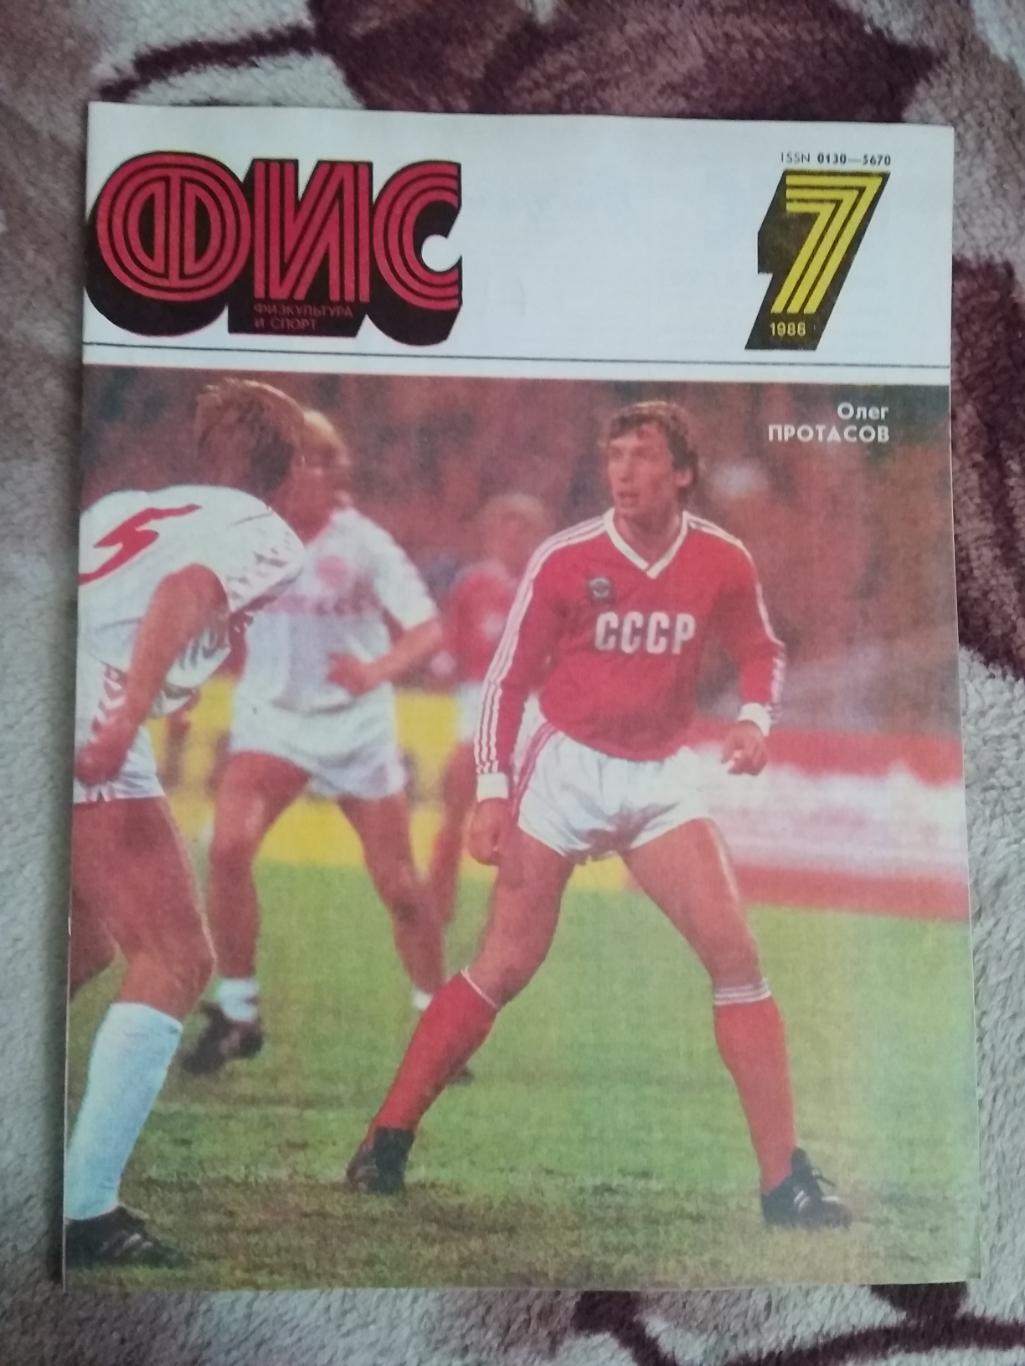 Журнал.Физкультура и спорт № 7 1988 г. (ФиС).